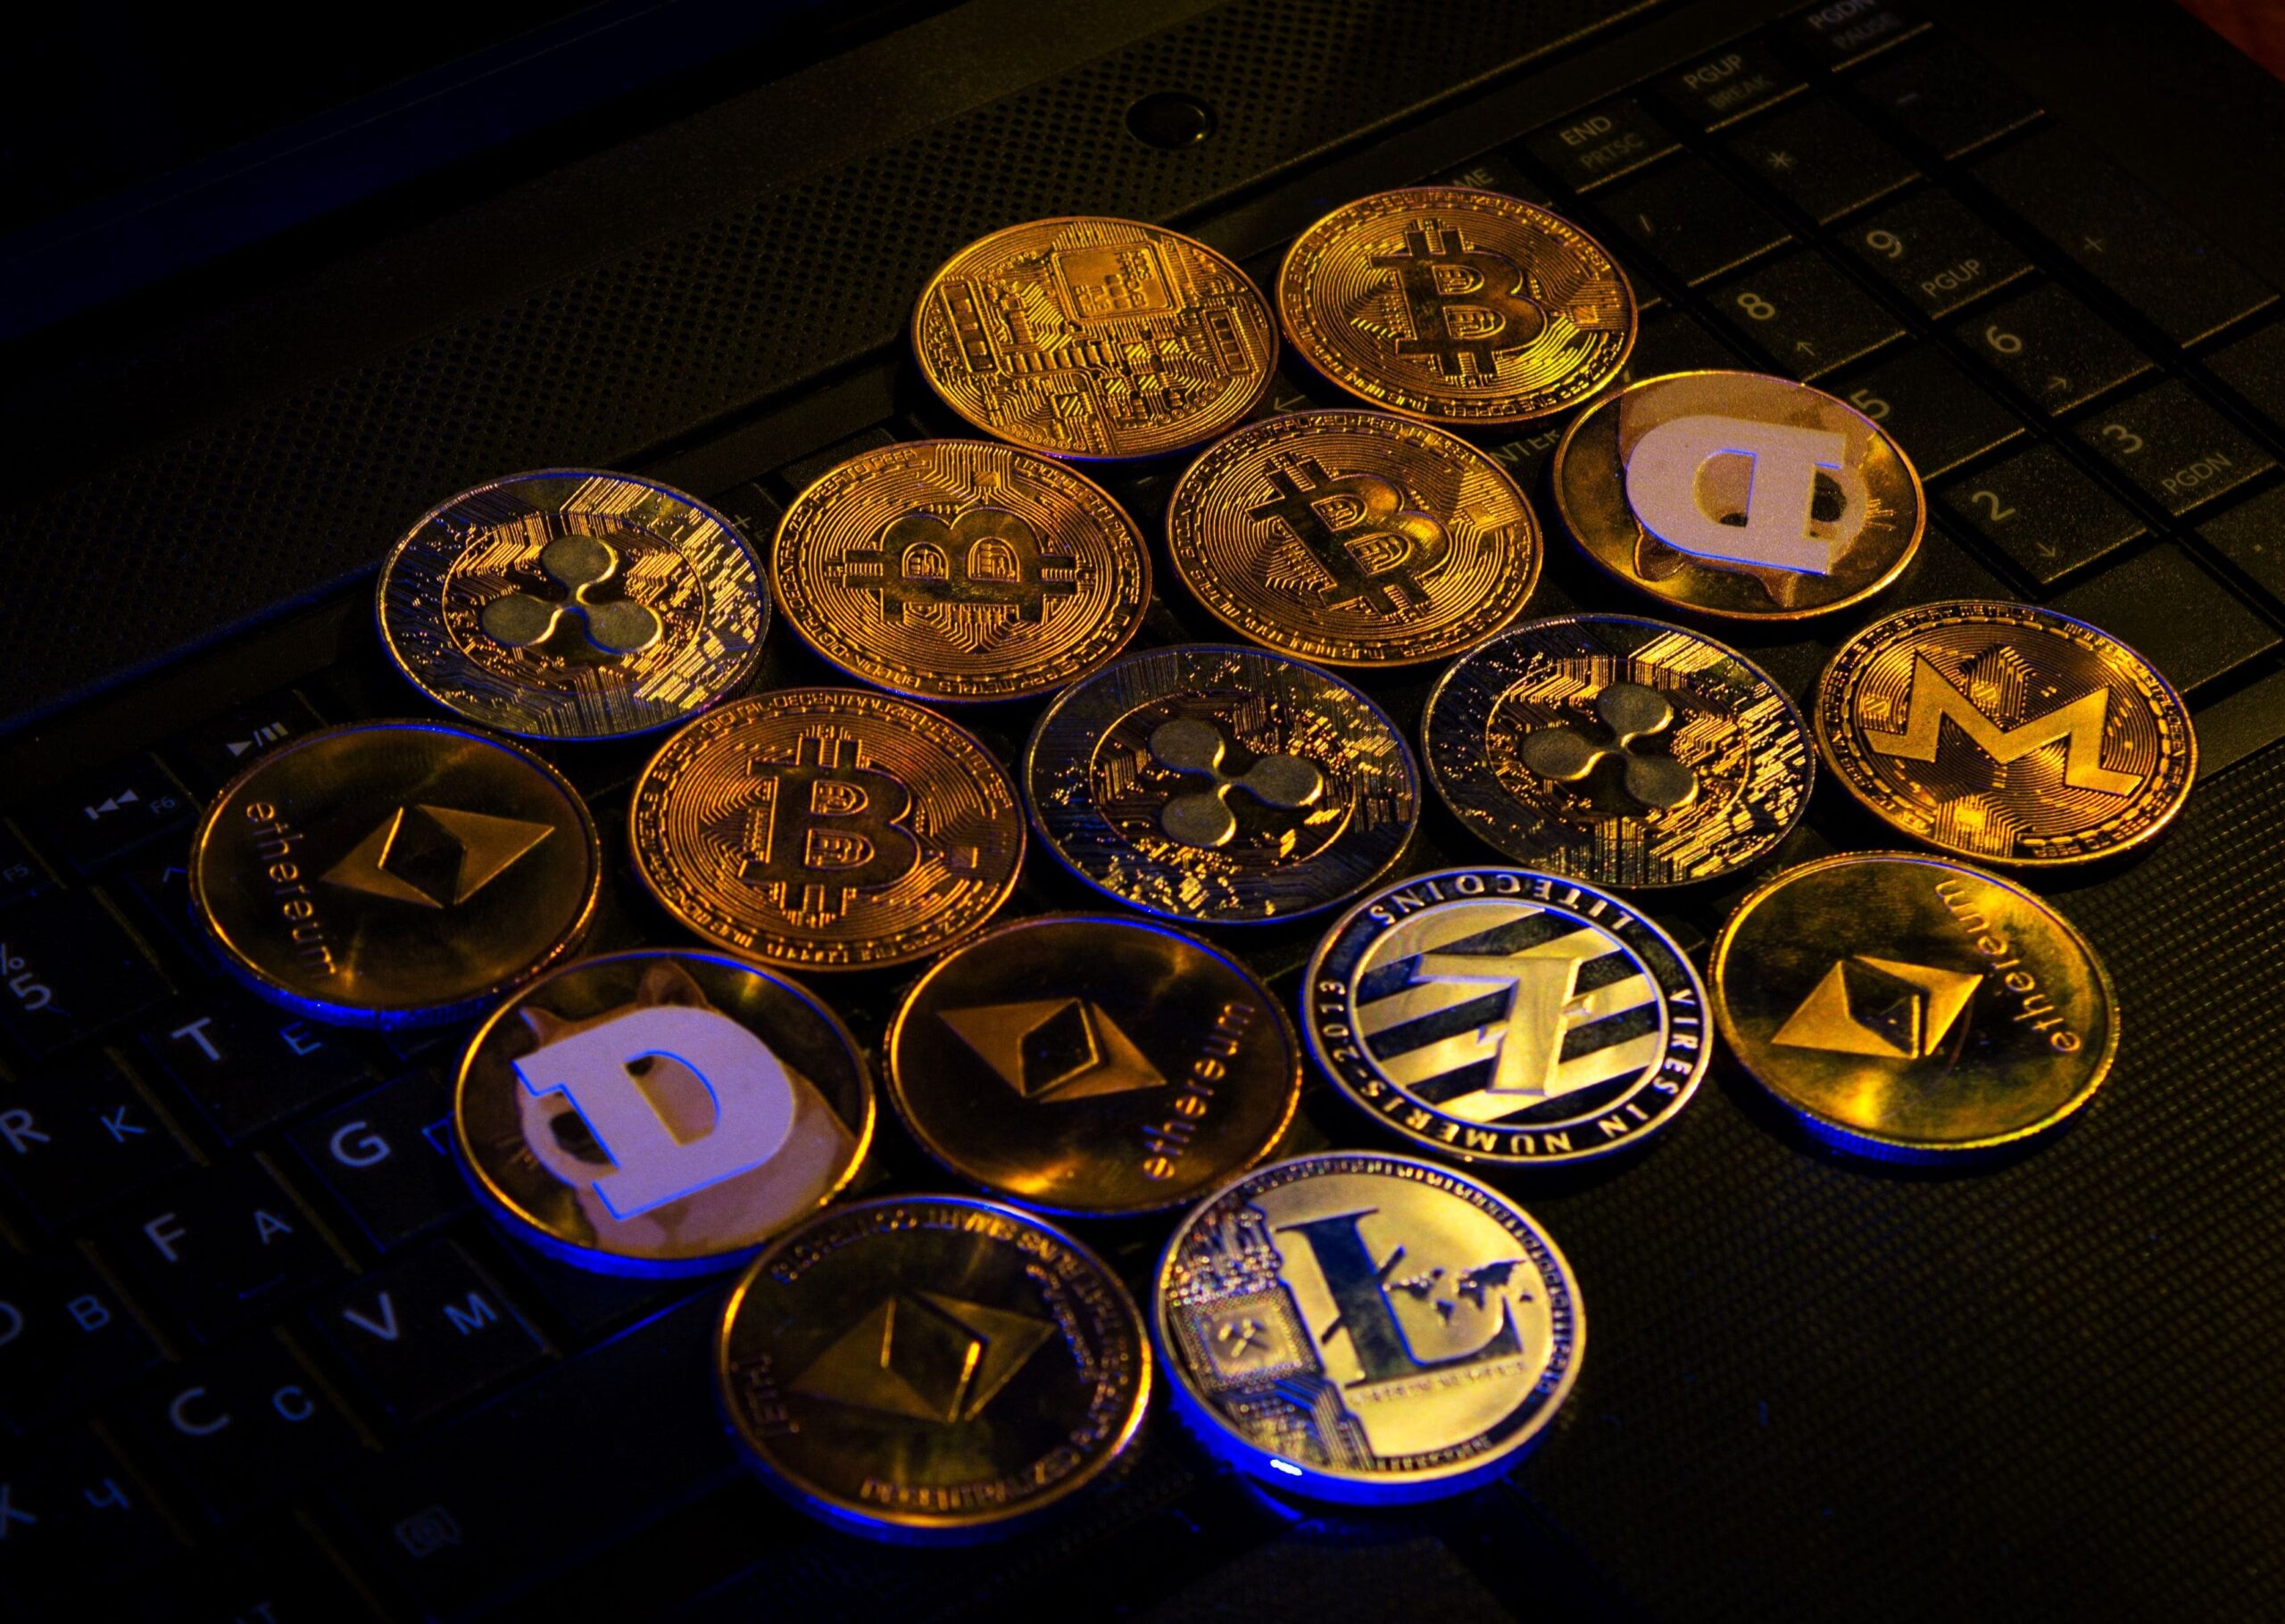 Verschiedene Krypto-Währungen als Goldmünzen dargestellt